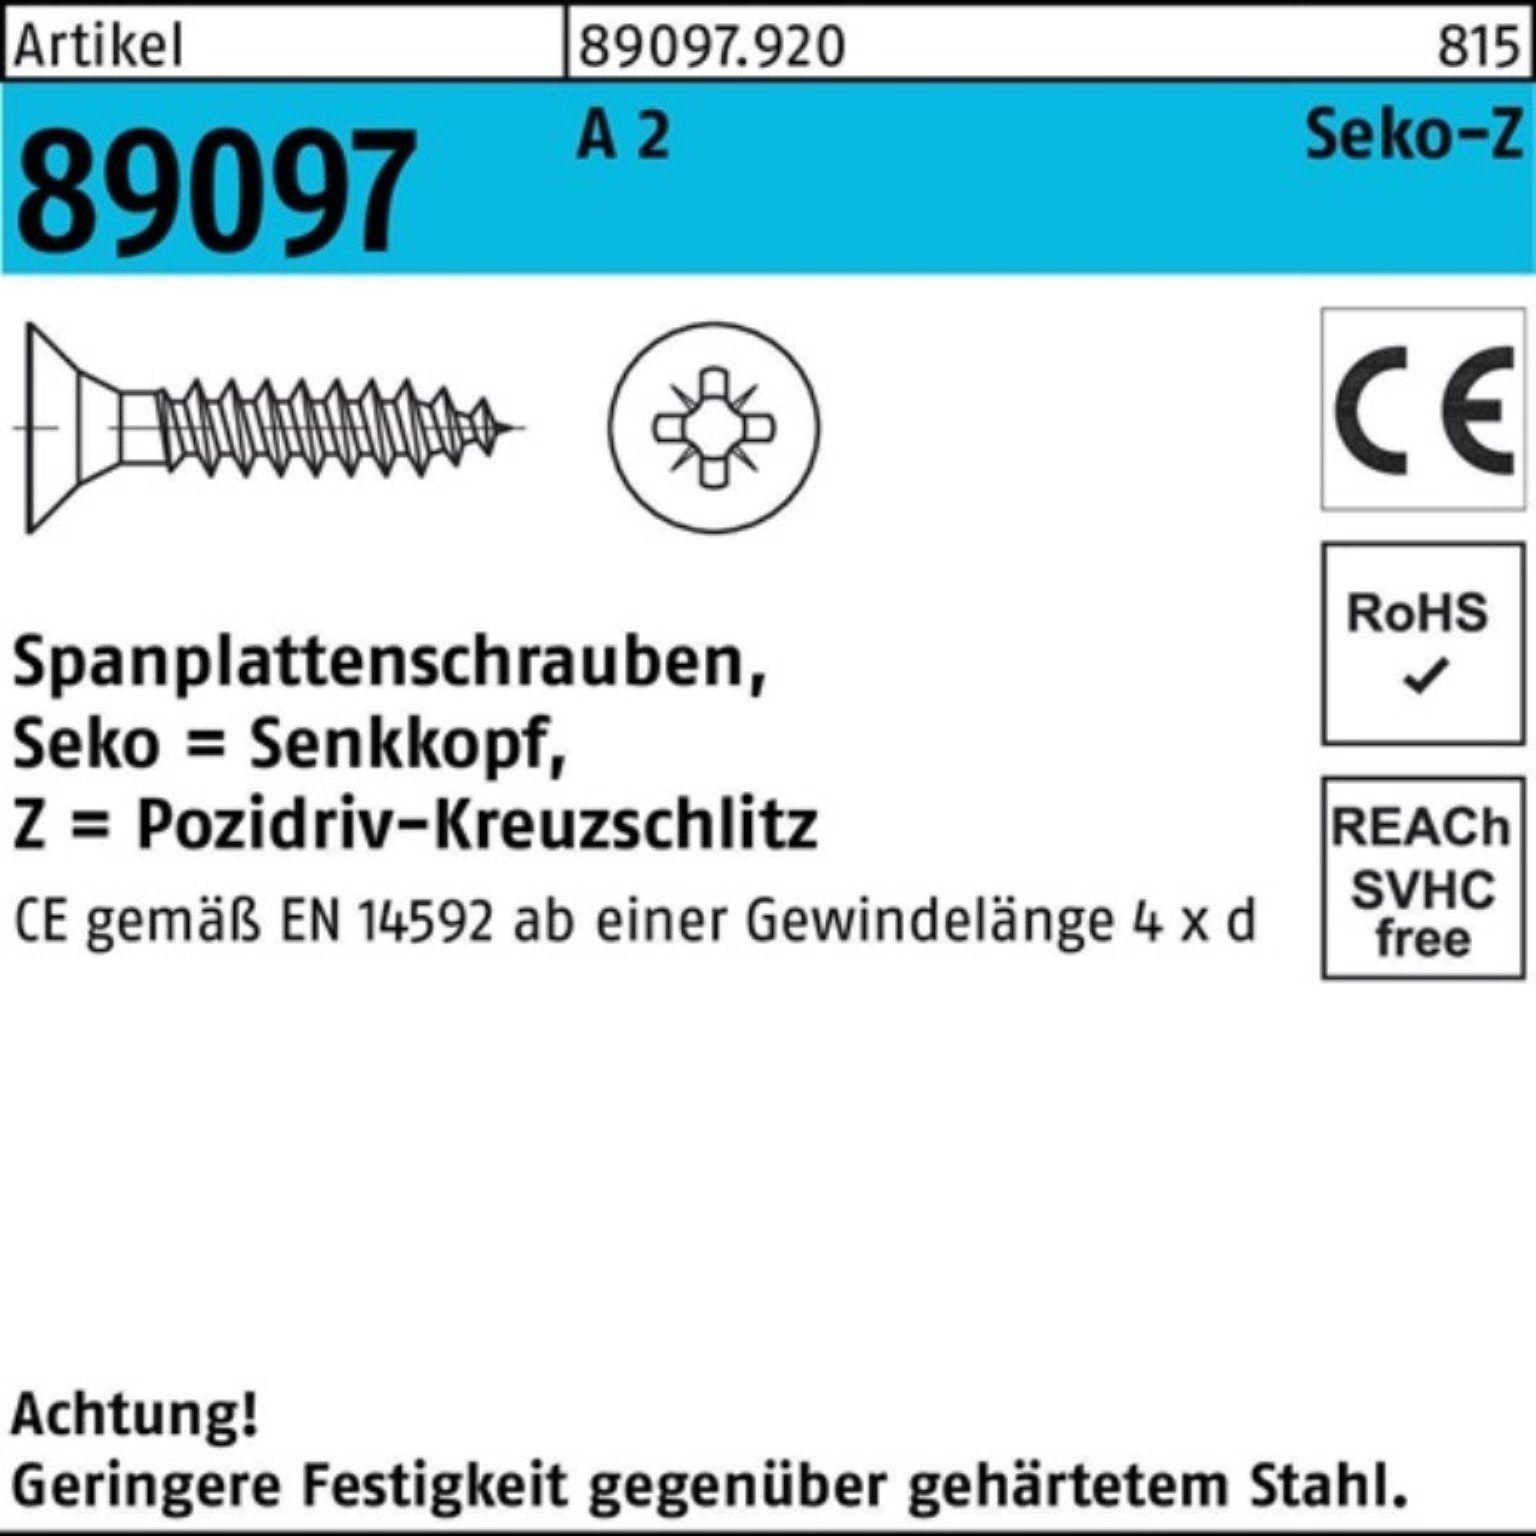 Reyher Spanplattenschraube 5x 25-Z 200 PZ Stü Spanplattenschraube A SEKO VG 89097 2 200er Pack R